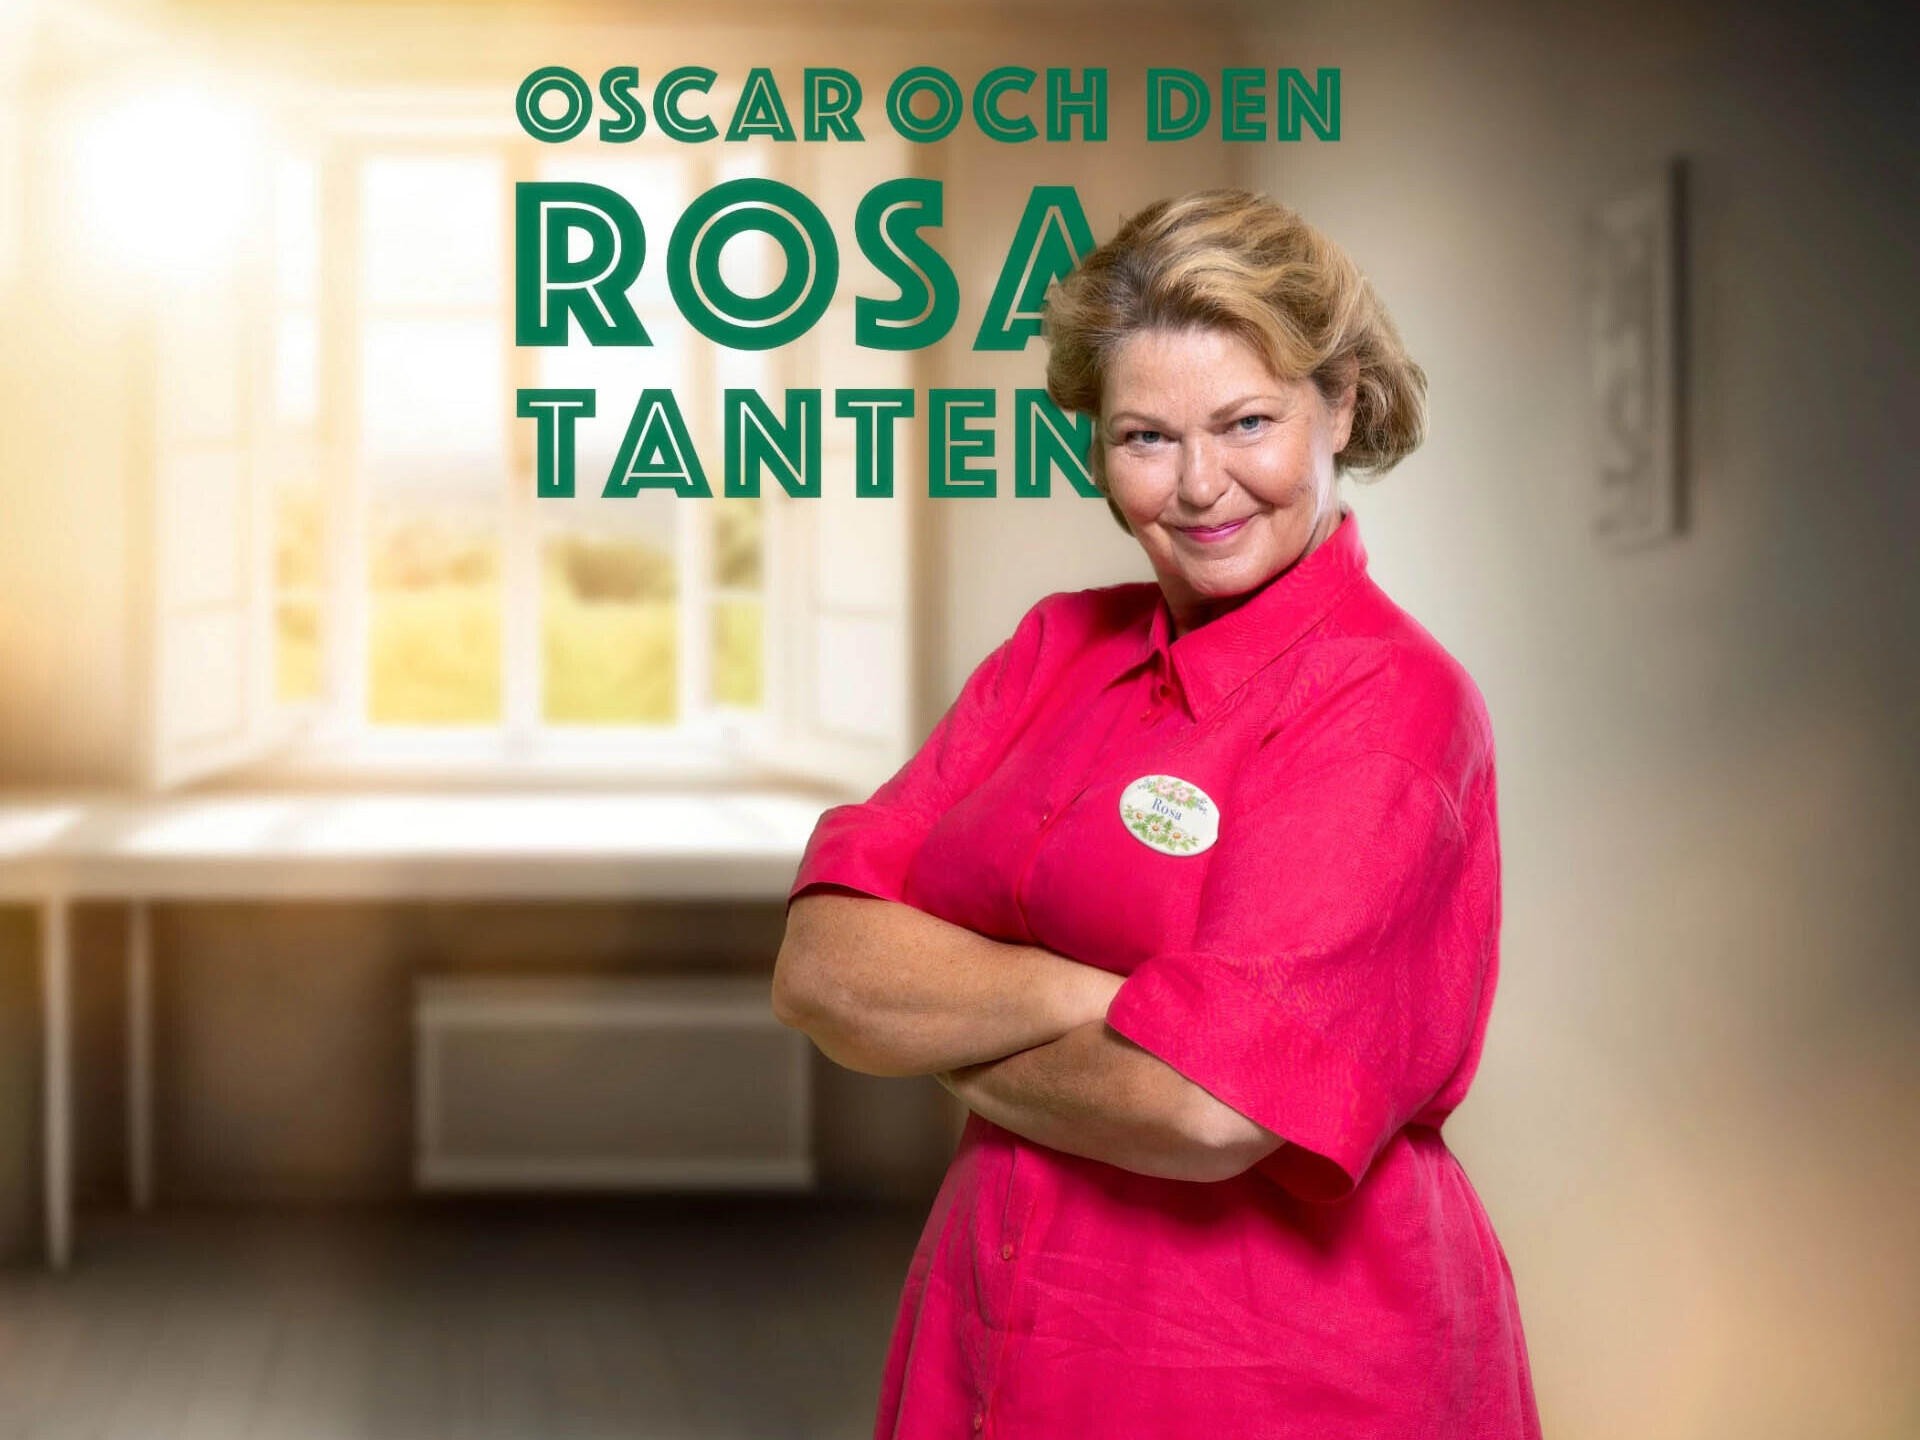 Ing-Marie Carlsson: Oscar och den rosa tanten